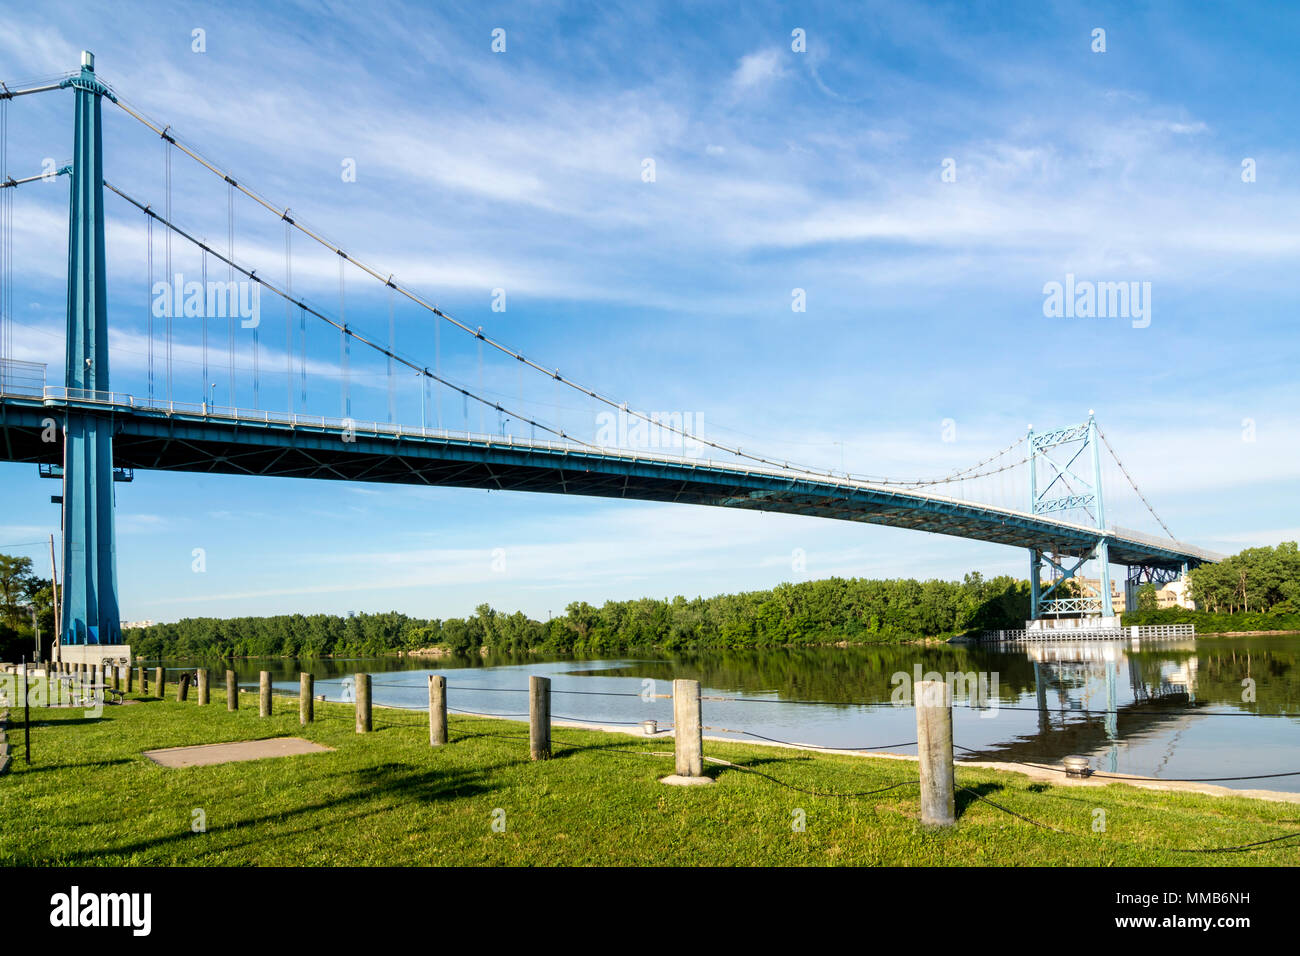 Une vue panoramique du centre-ville de Toledo Ohio's Anthony Wayne Bridge ou pont de haut niveau qui traverse la rivière Maumee.Un beau ciel bleu avec des nuages. Banque D'Images